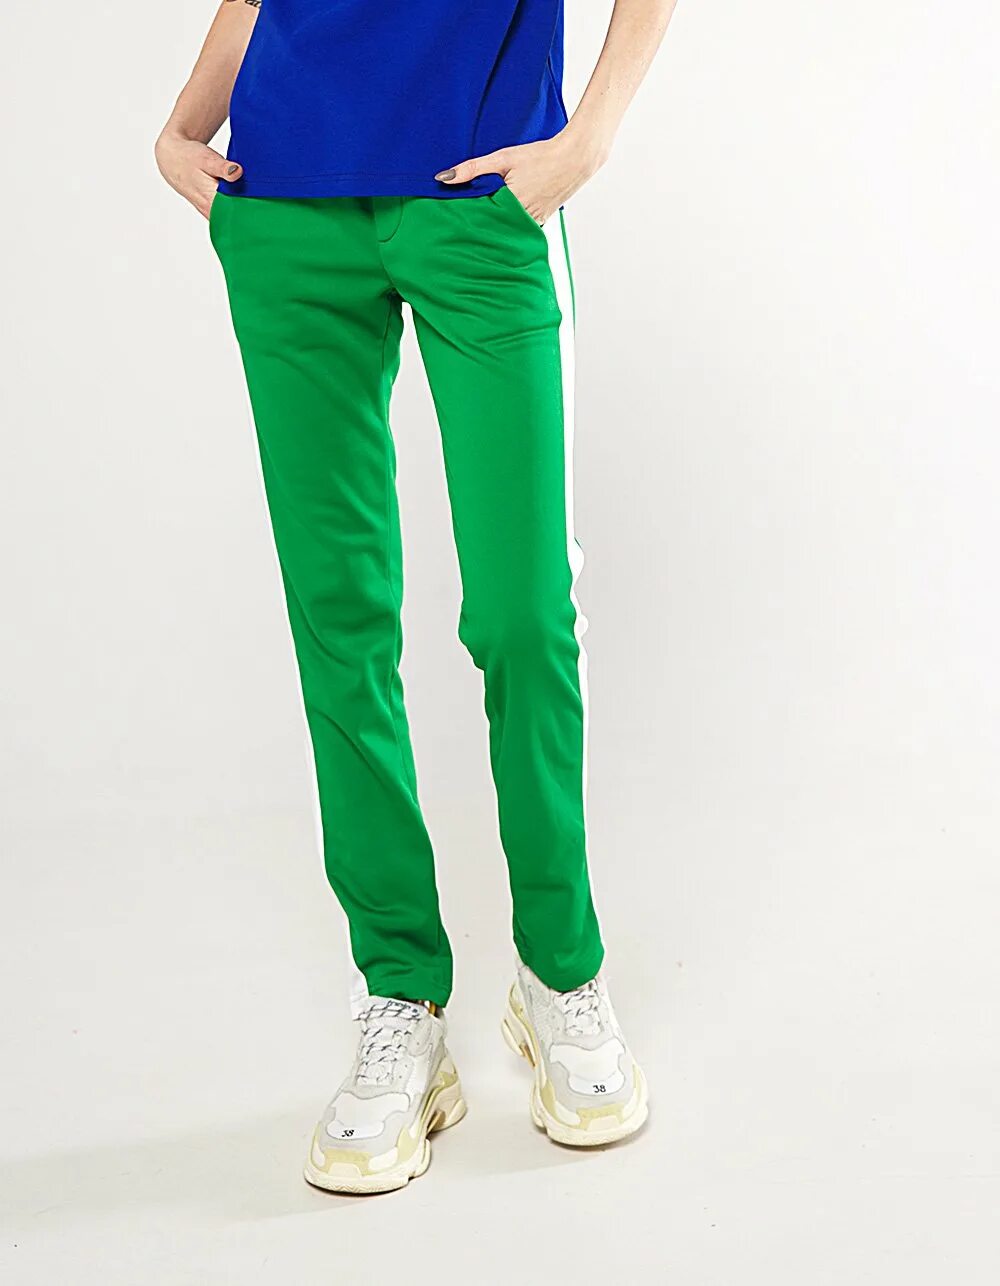 Неоновые штаны зеленые карго. Machine 56 зелёные штаны. Зелёные штаны женские. Салатовые брюки.